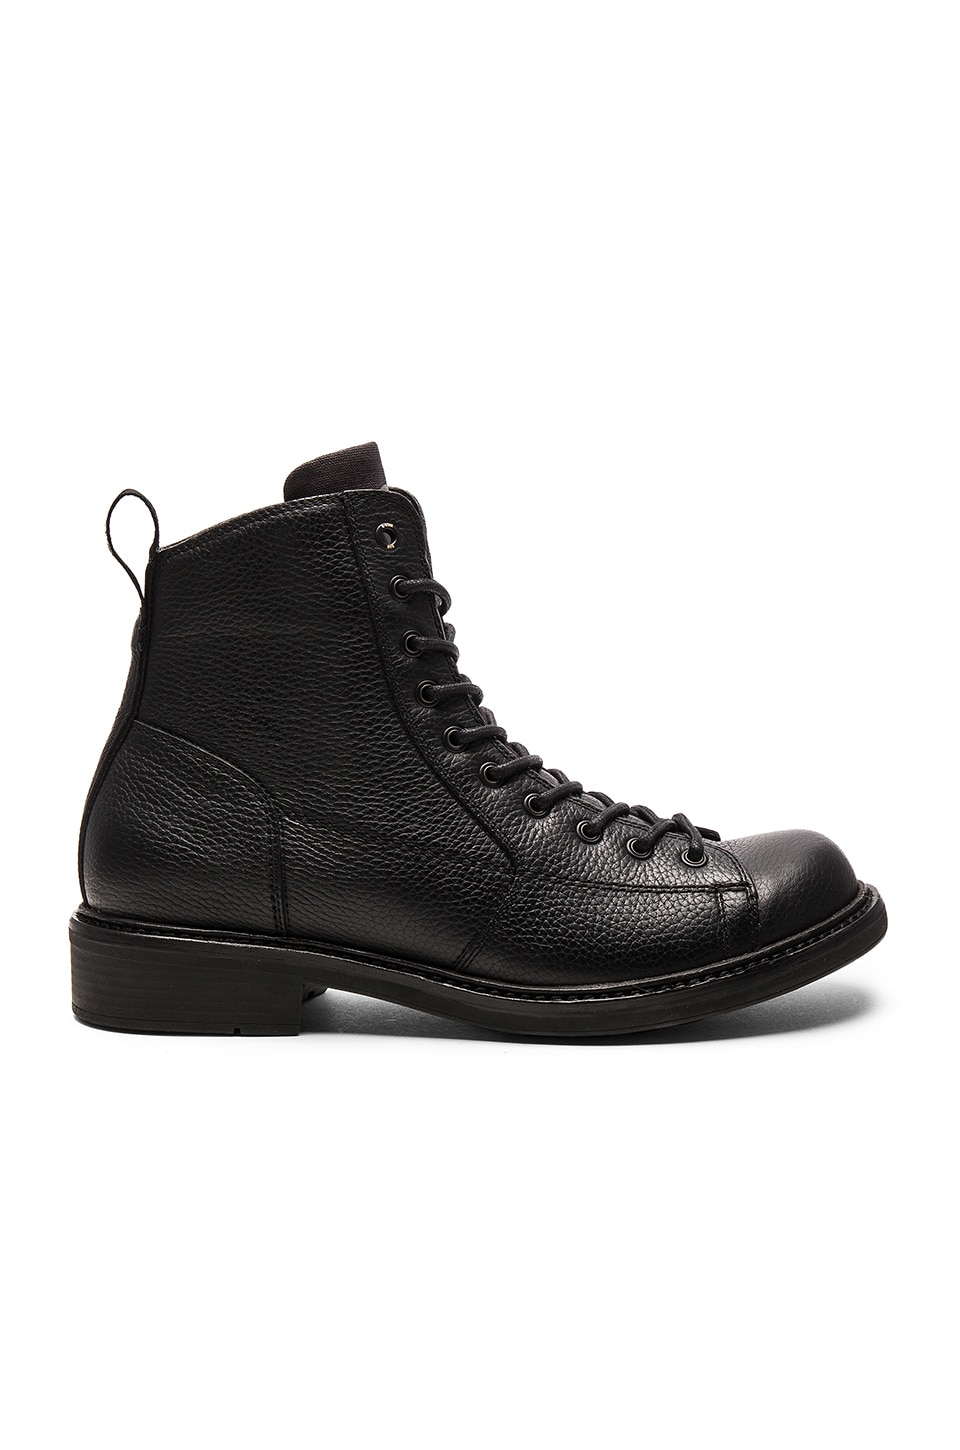 g star roofer boots black